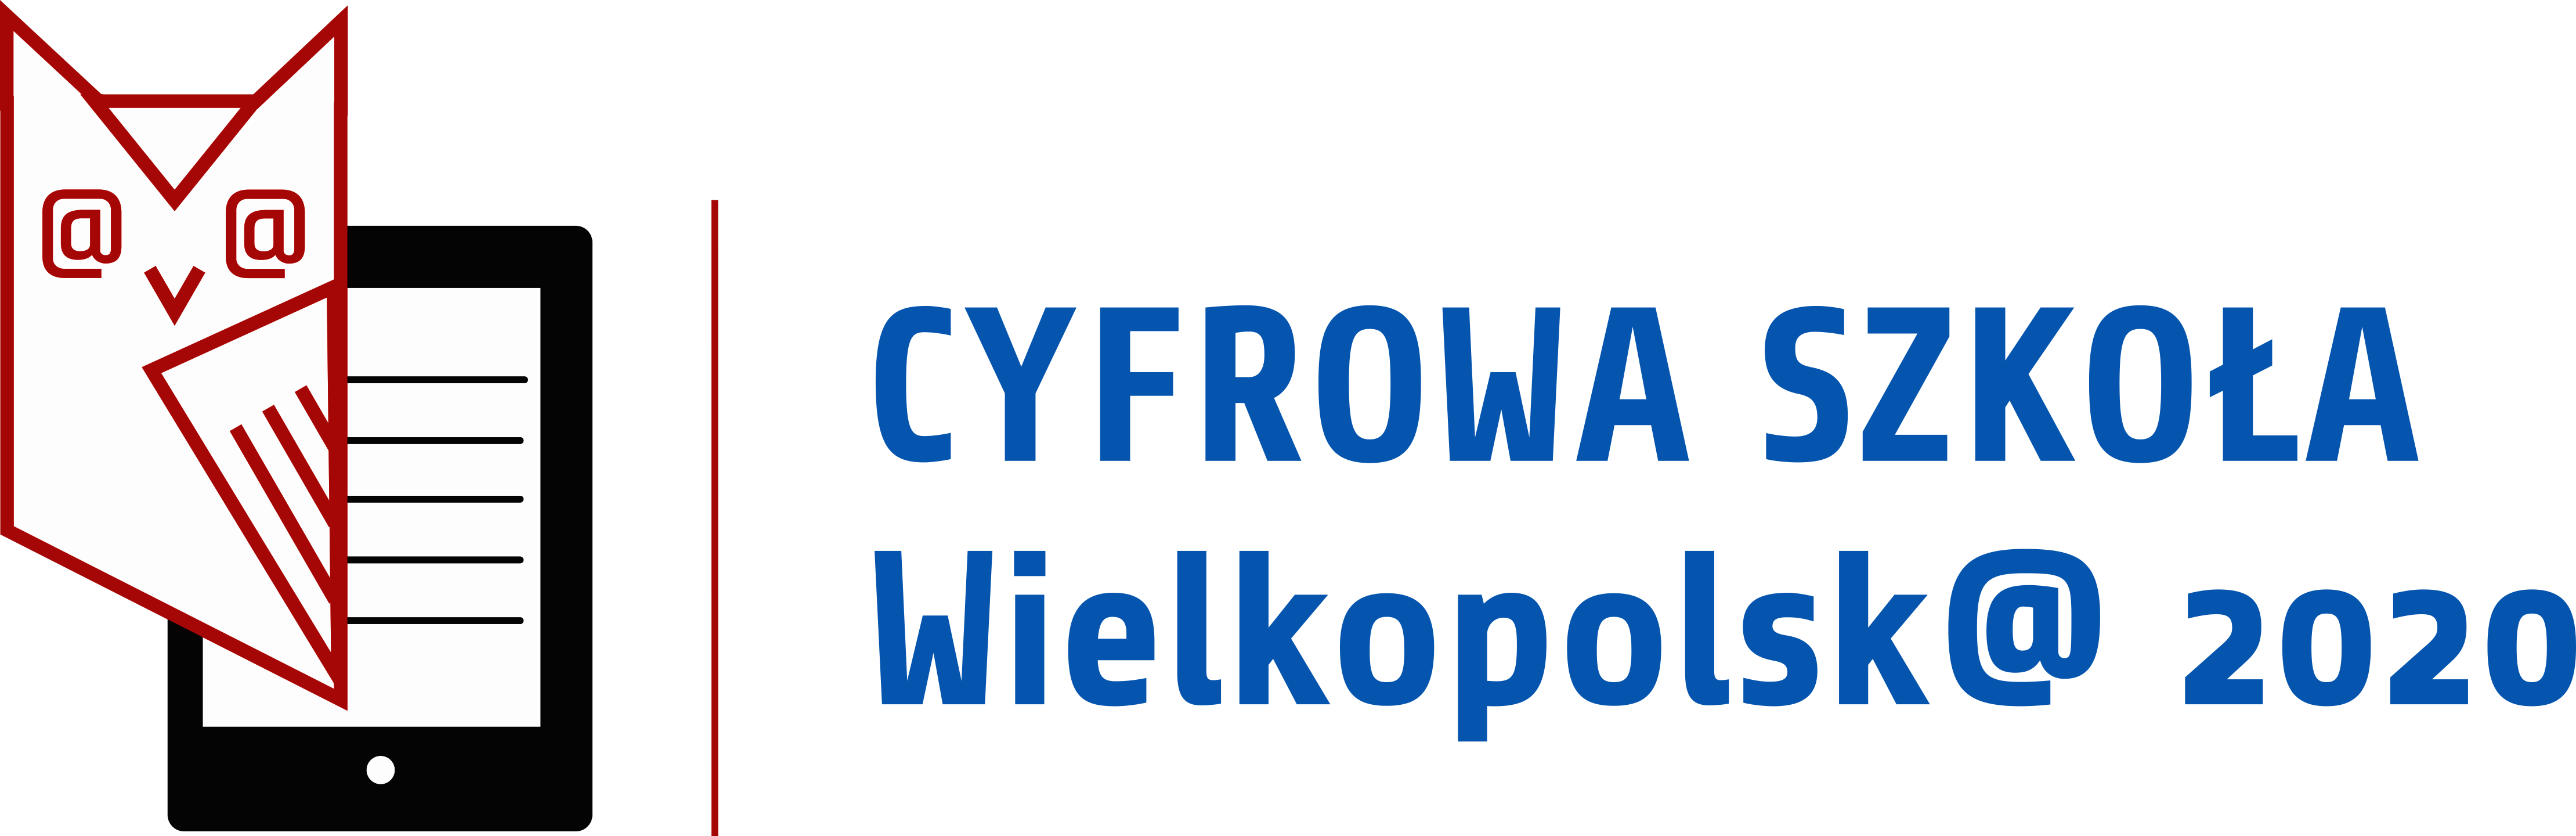 logo Cyfrowa Szkoła